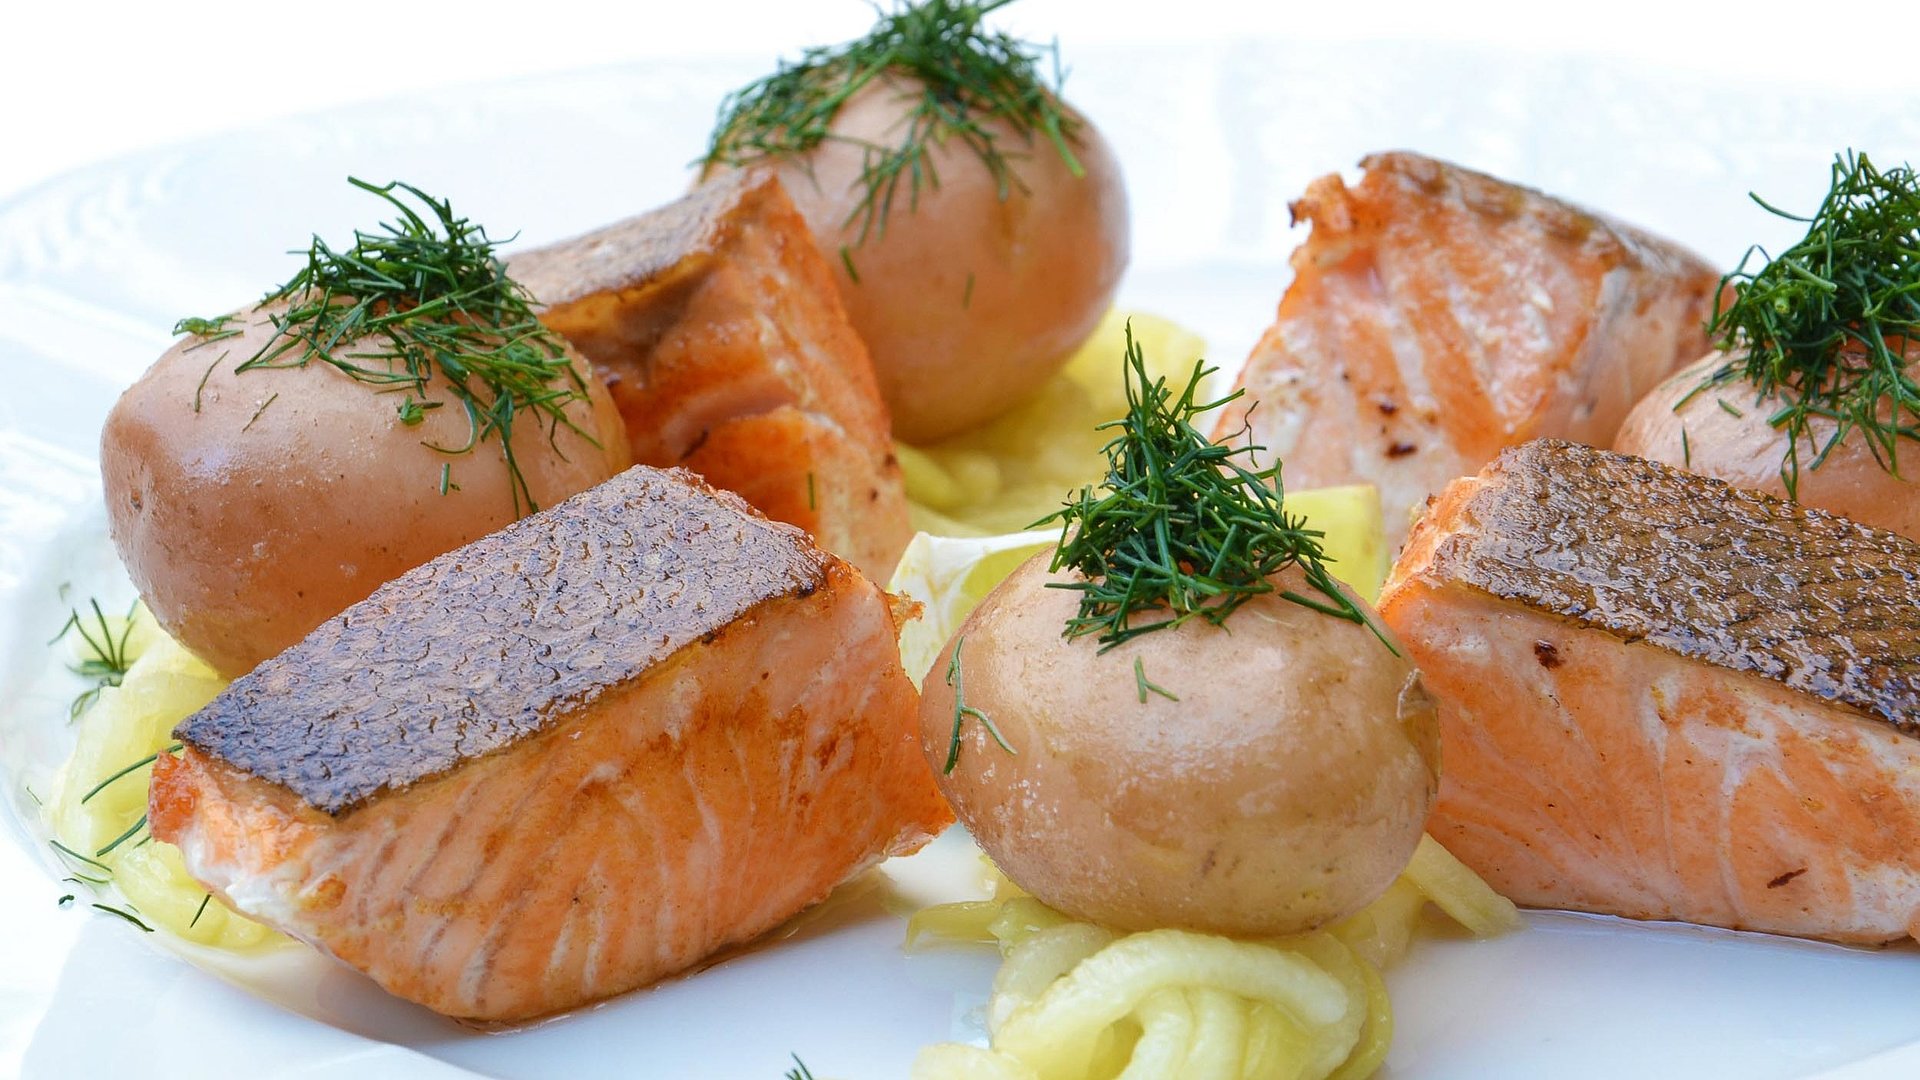 Fischwochen in Nürnberg - Teller mit gourmet-haft zubereitetem Lachs